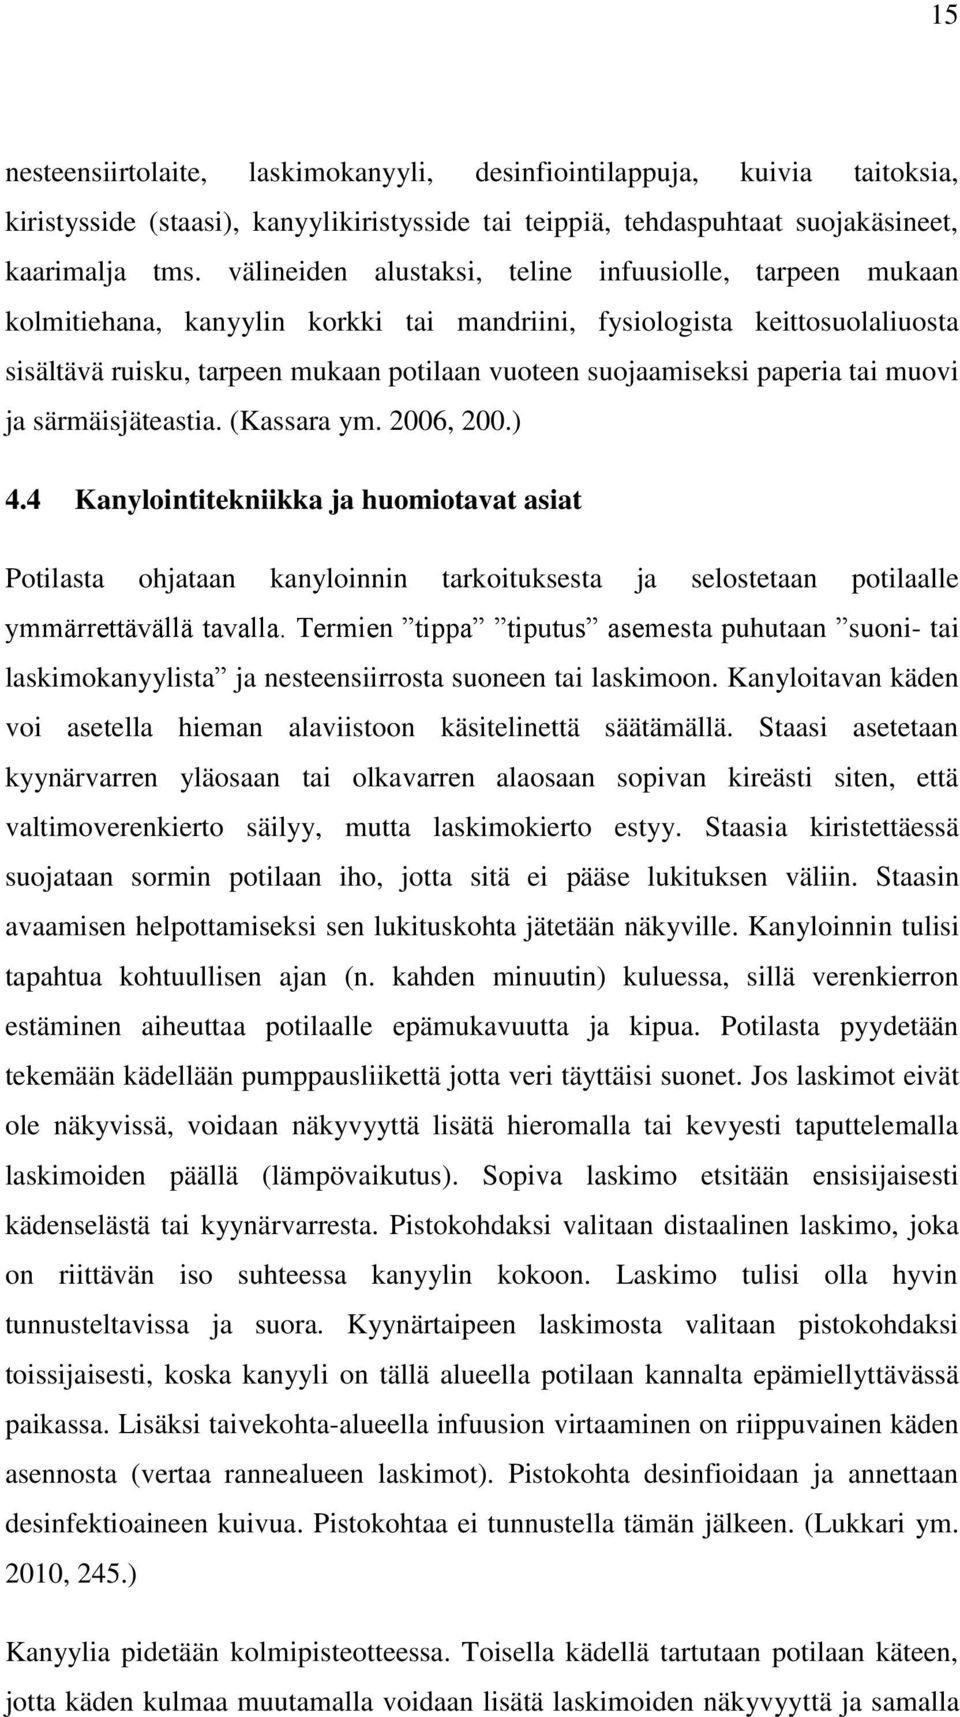 paperia tai muovi ja särmäisjäteastia. (Kassara ym. 2006, 200.) 4.